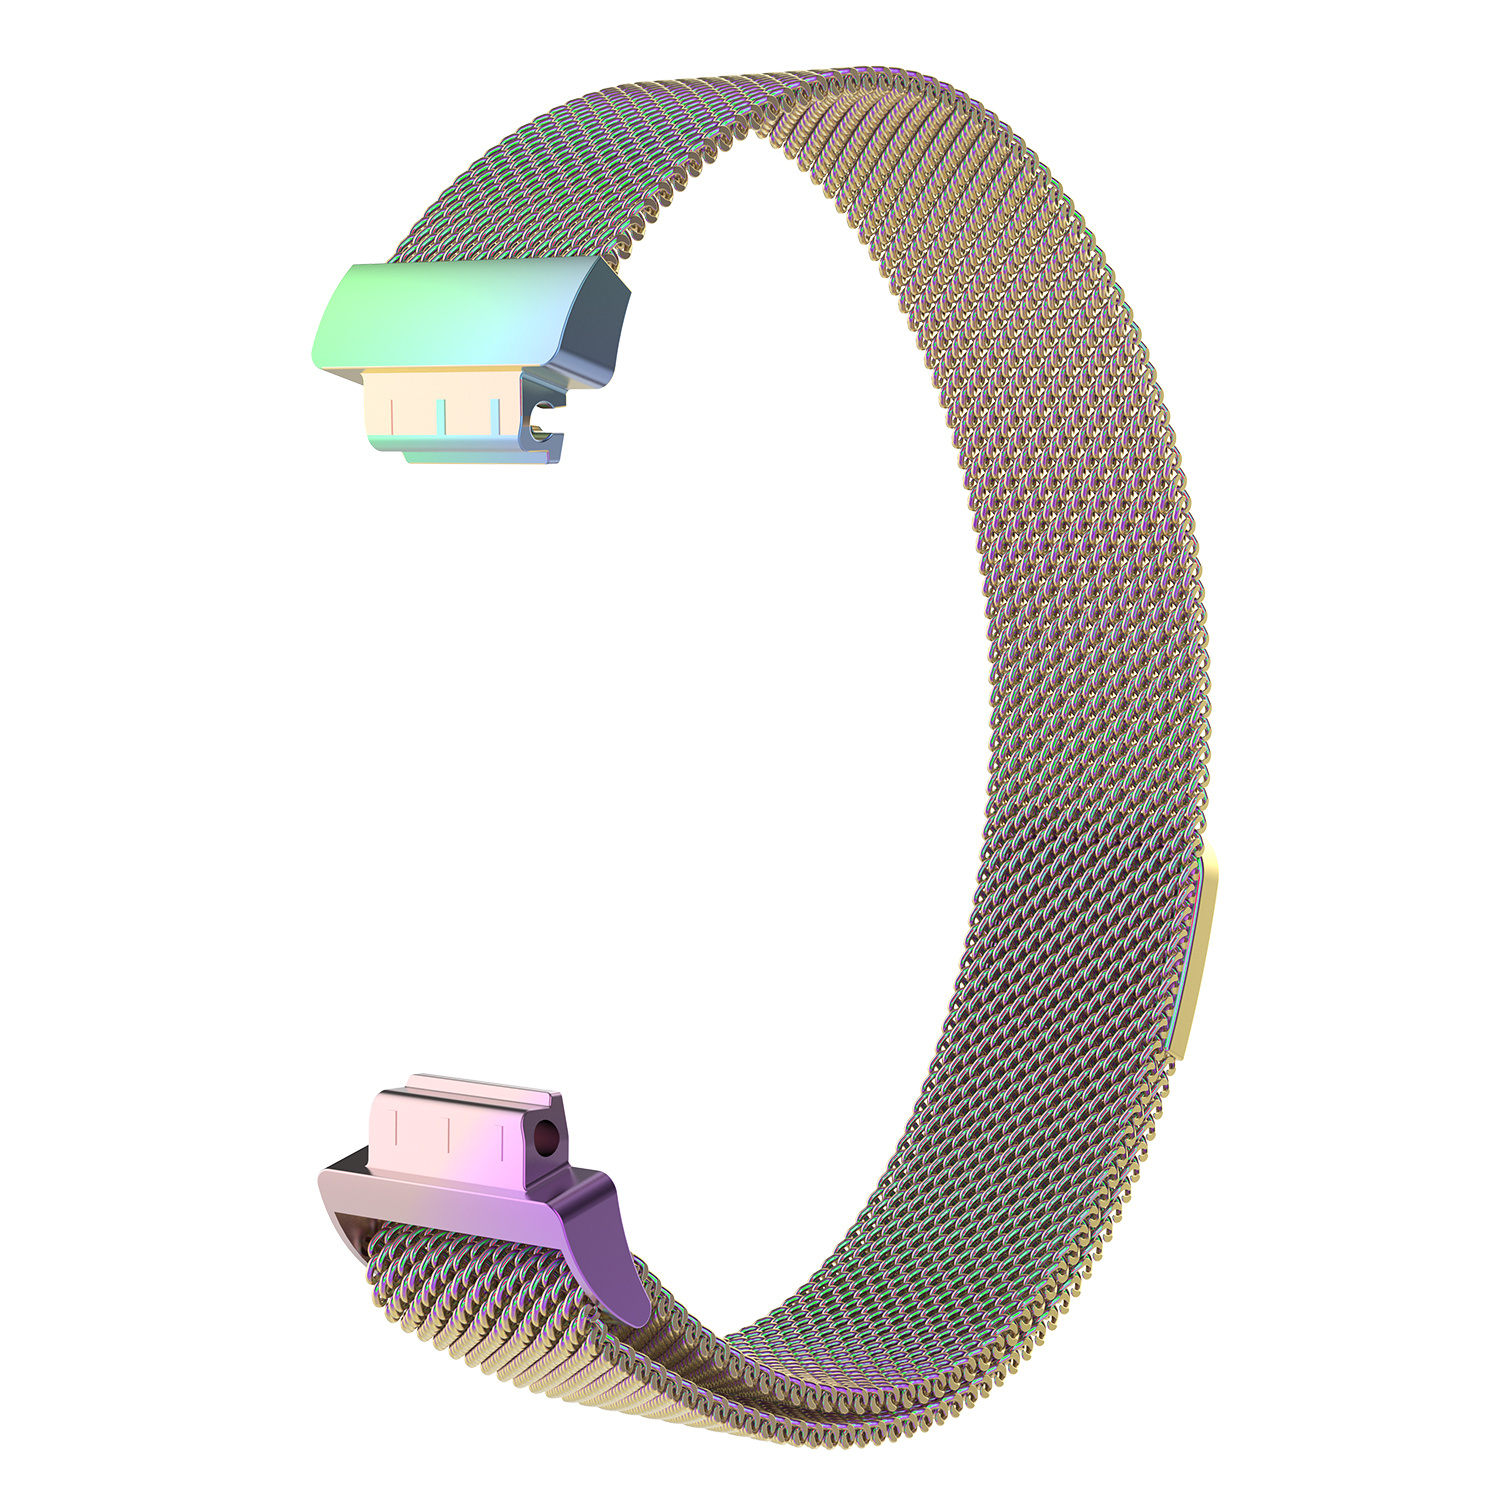 Bracelet milanais Fitbit Inspire - coloré